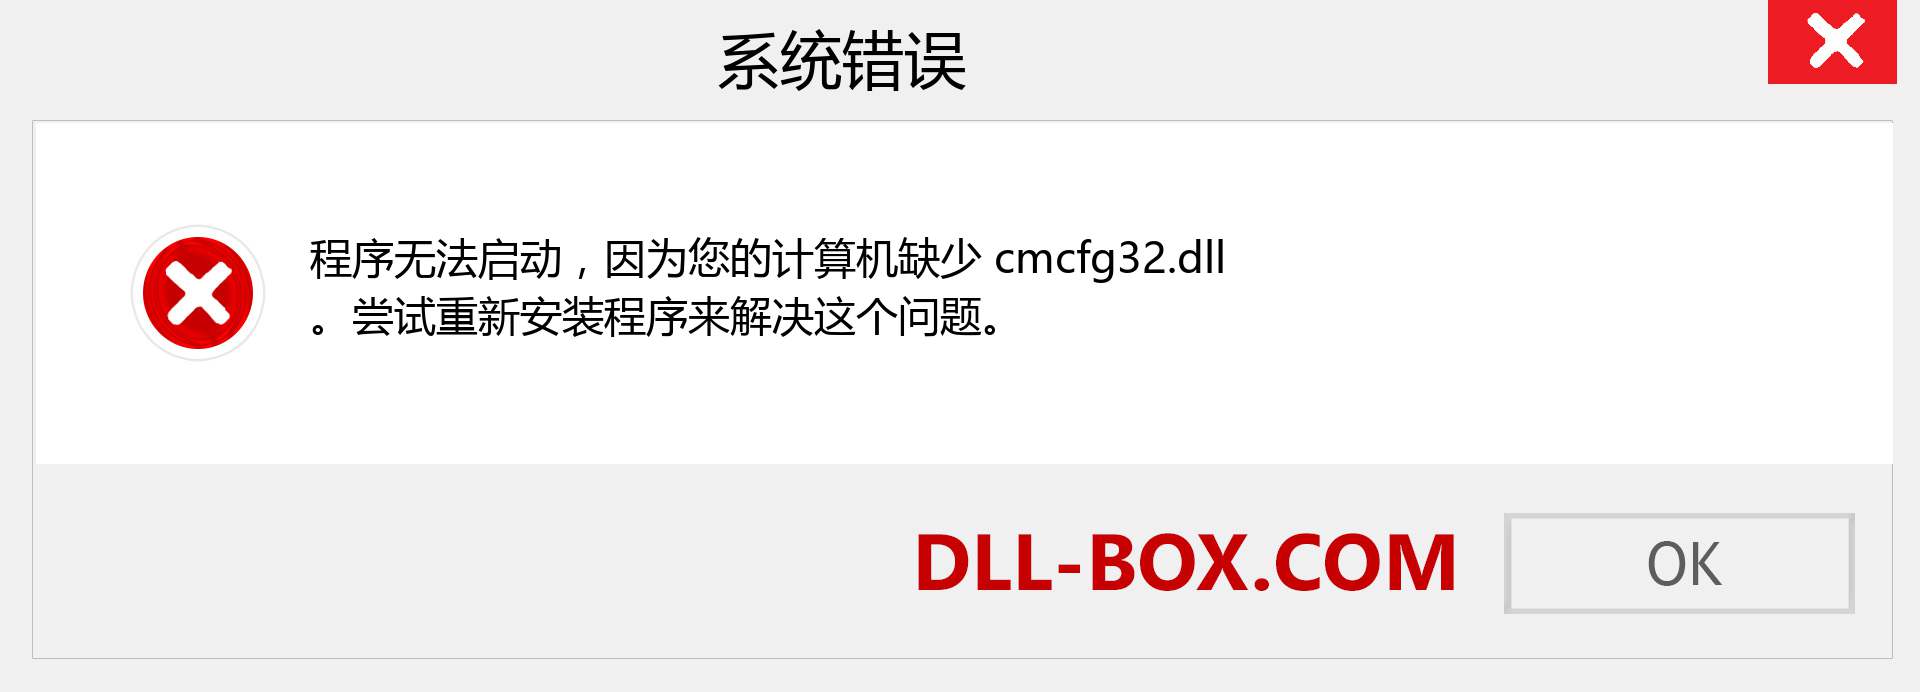 cmcfg32.dll 文件丢失？。 适用于 Windows 7、8、10 的下载 - 修复 Windows、照片、图像上的 cmcfg32 dll 丢失错误